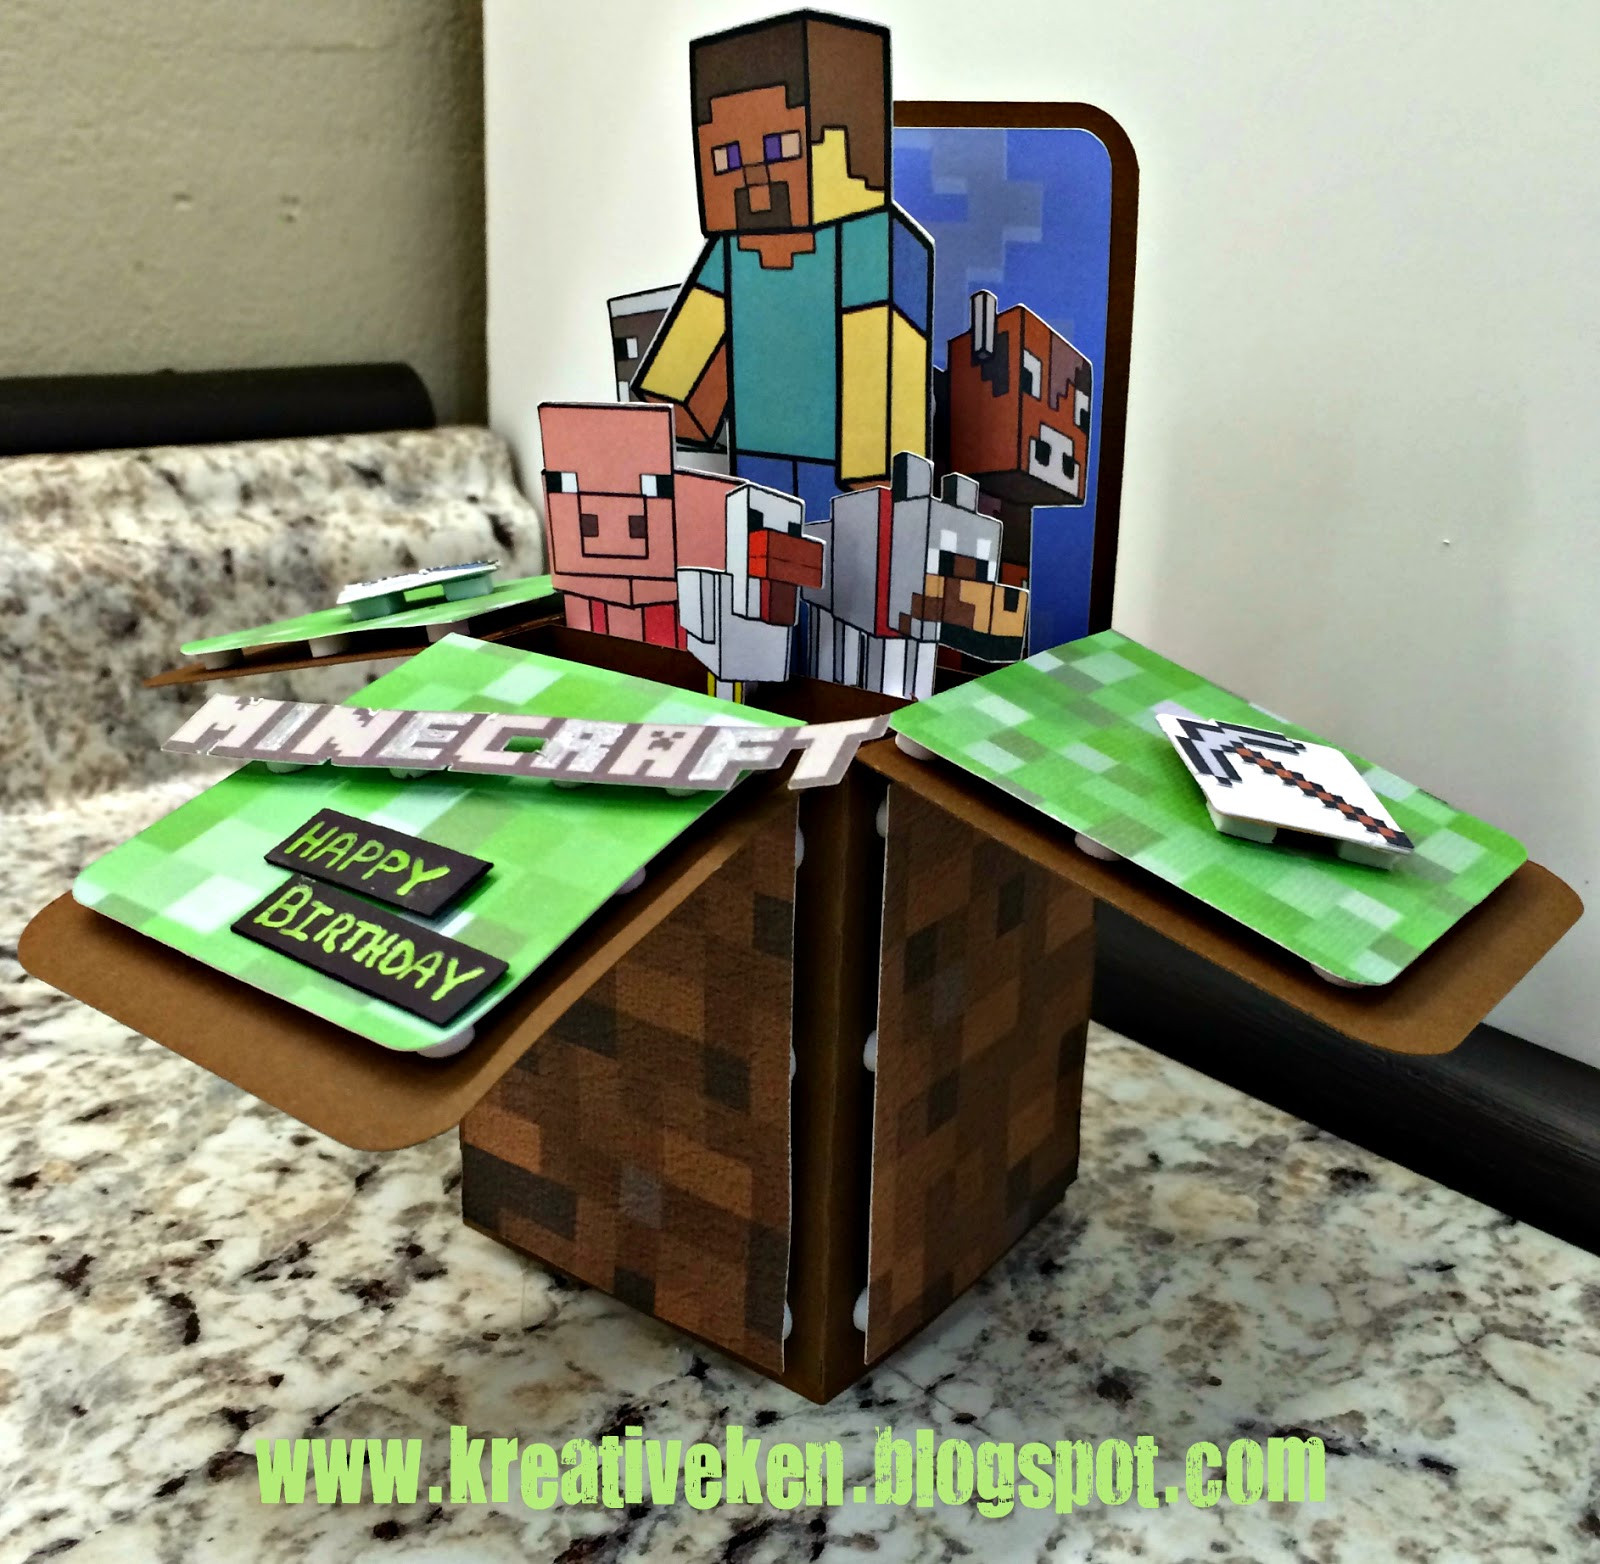 Best ideas about Minecraft Birthday Card
. Save or Pin MINECRAFT BIRTHDAY CARD Now.